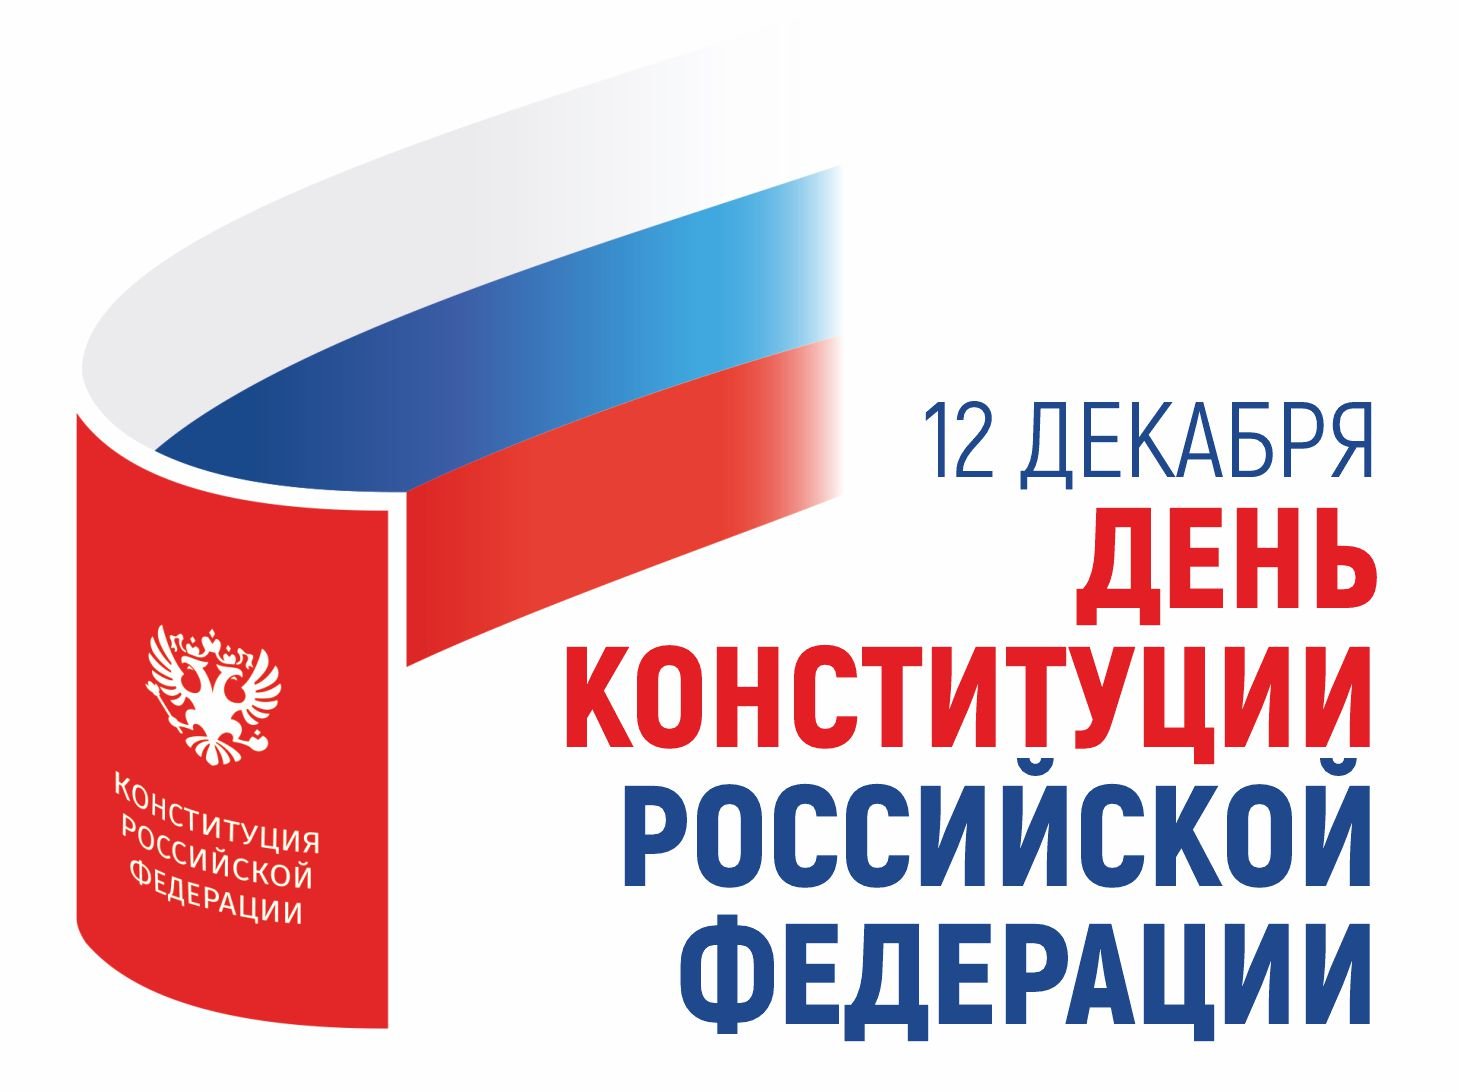 12 декабря - день Конституции Российской Федерации. Конституционные права и свободы граждан. .